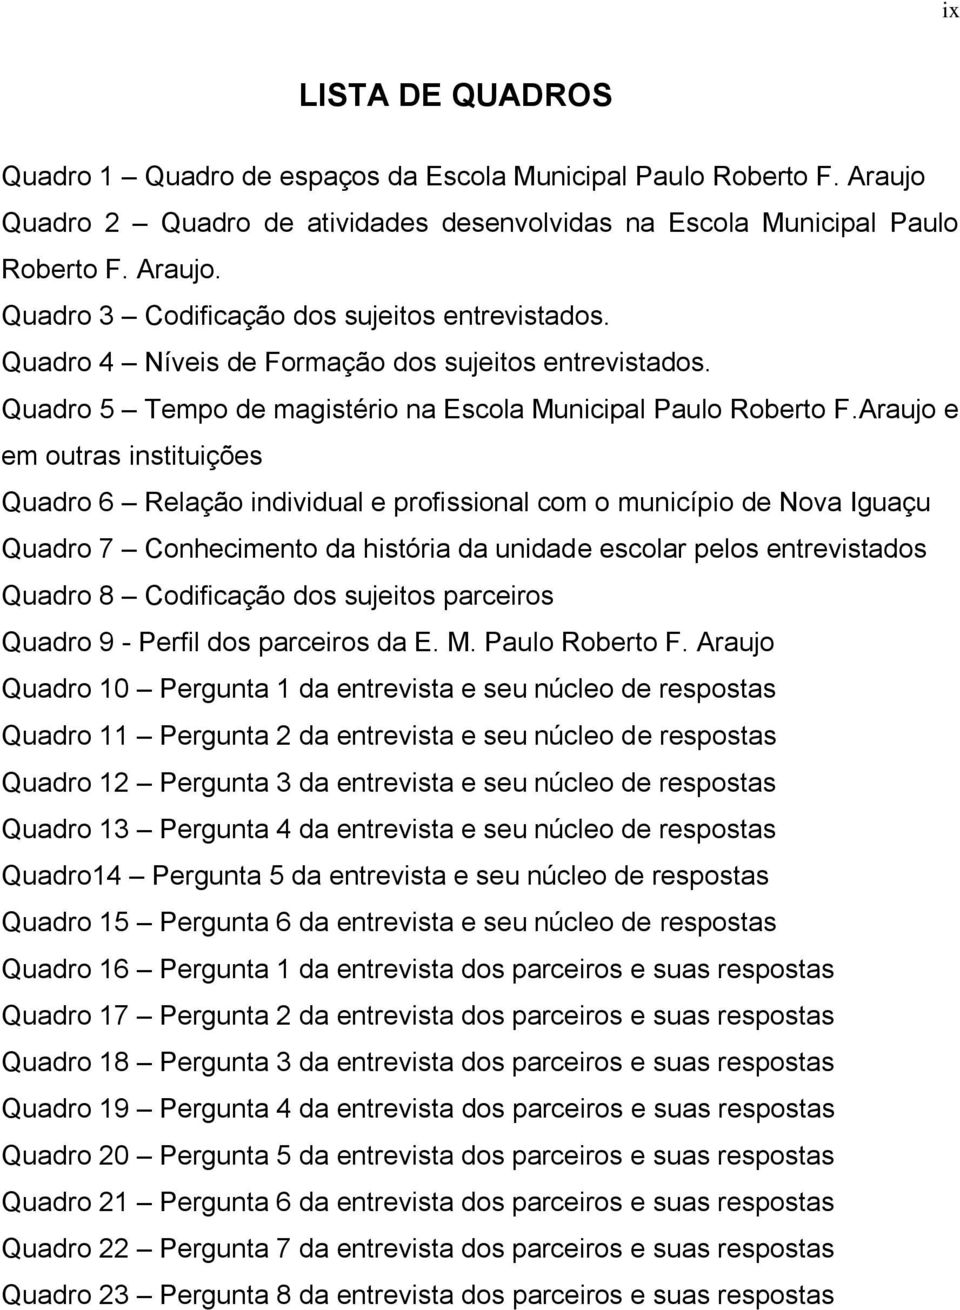 Araujo e em outras istituições Quadro 6 Relação idividual e profissioal com o muicípio de Nova Iguaçu Quadro 7 Cohecimeto da história da uidade escolar pelos etrevistados Quadro 8 Codificação dos